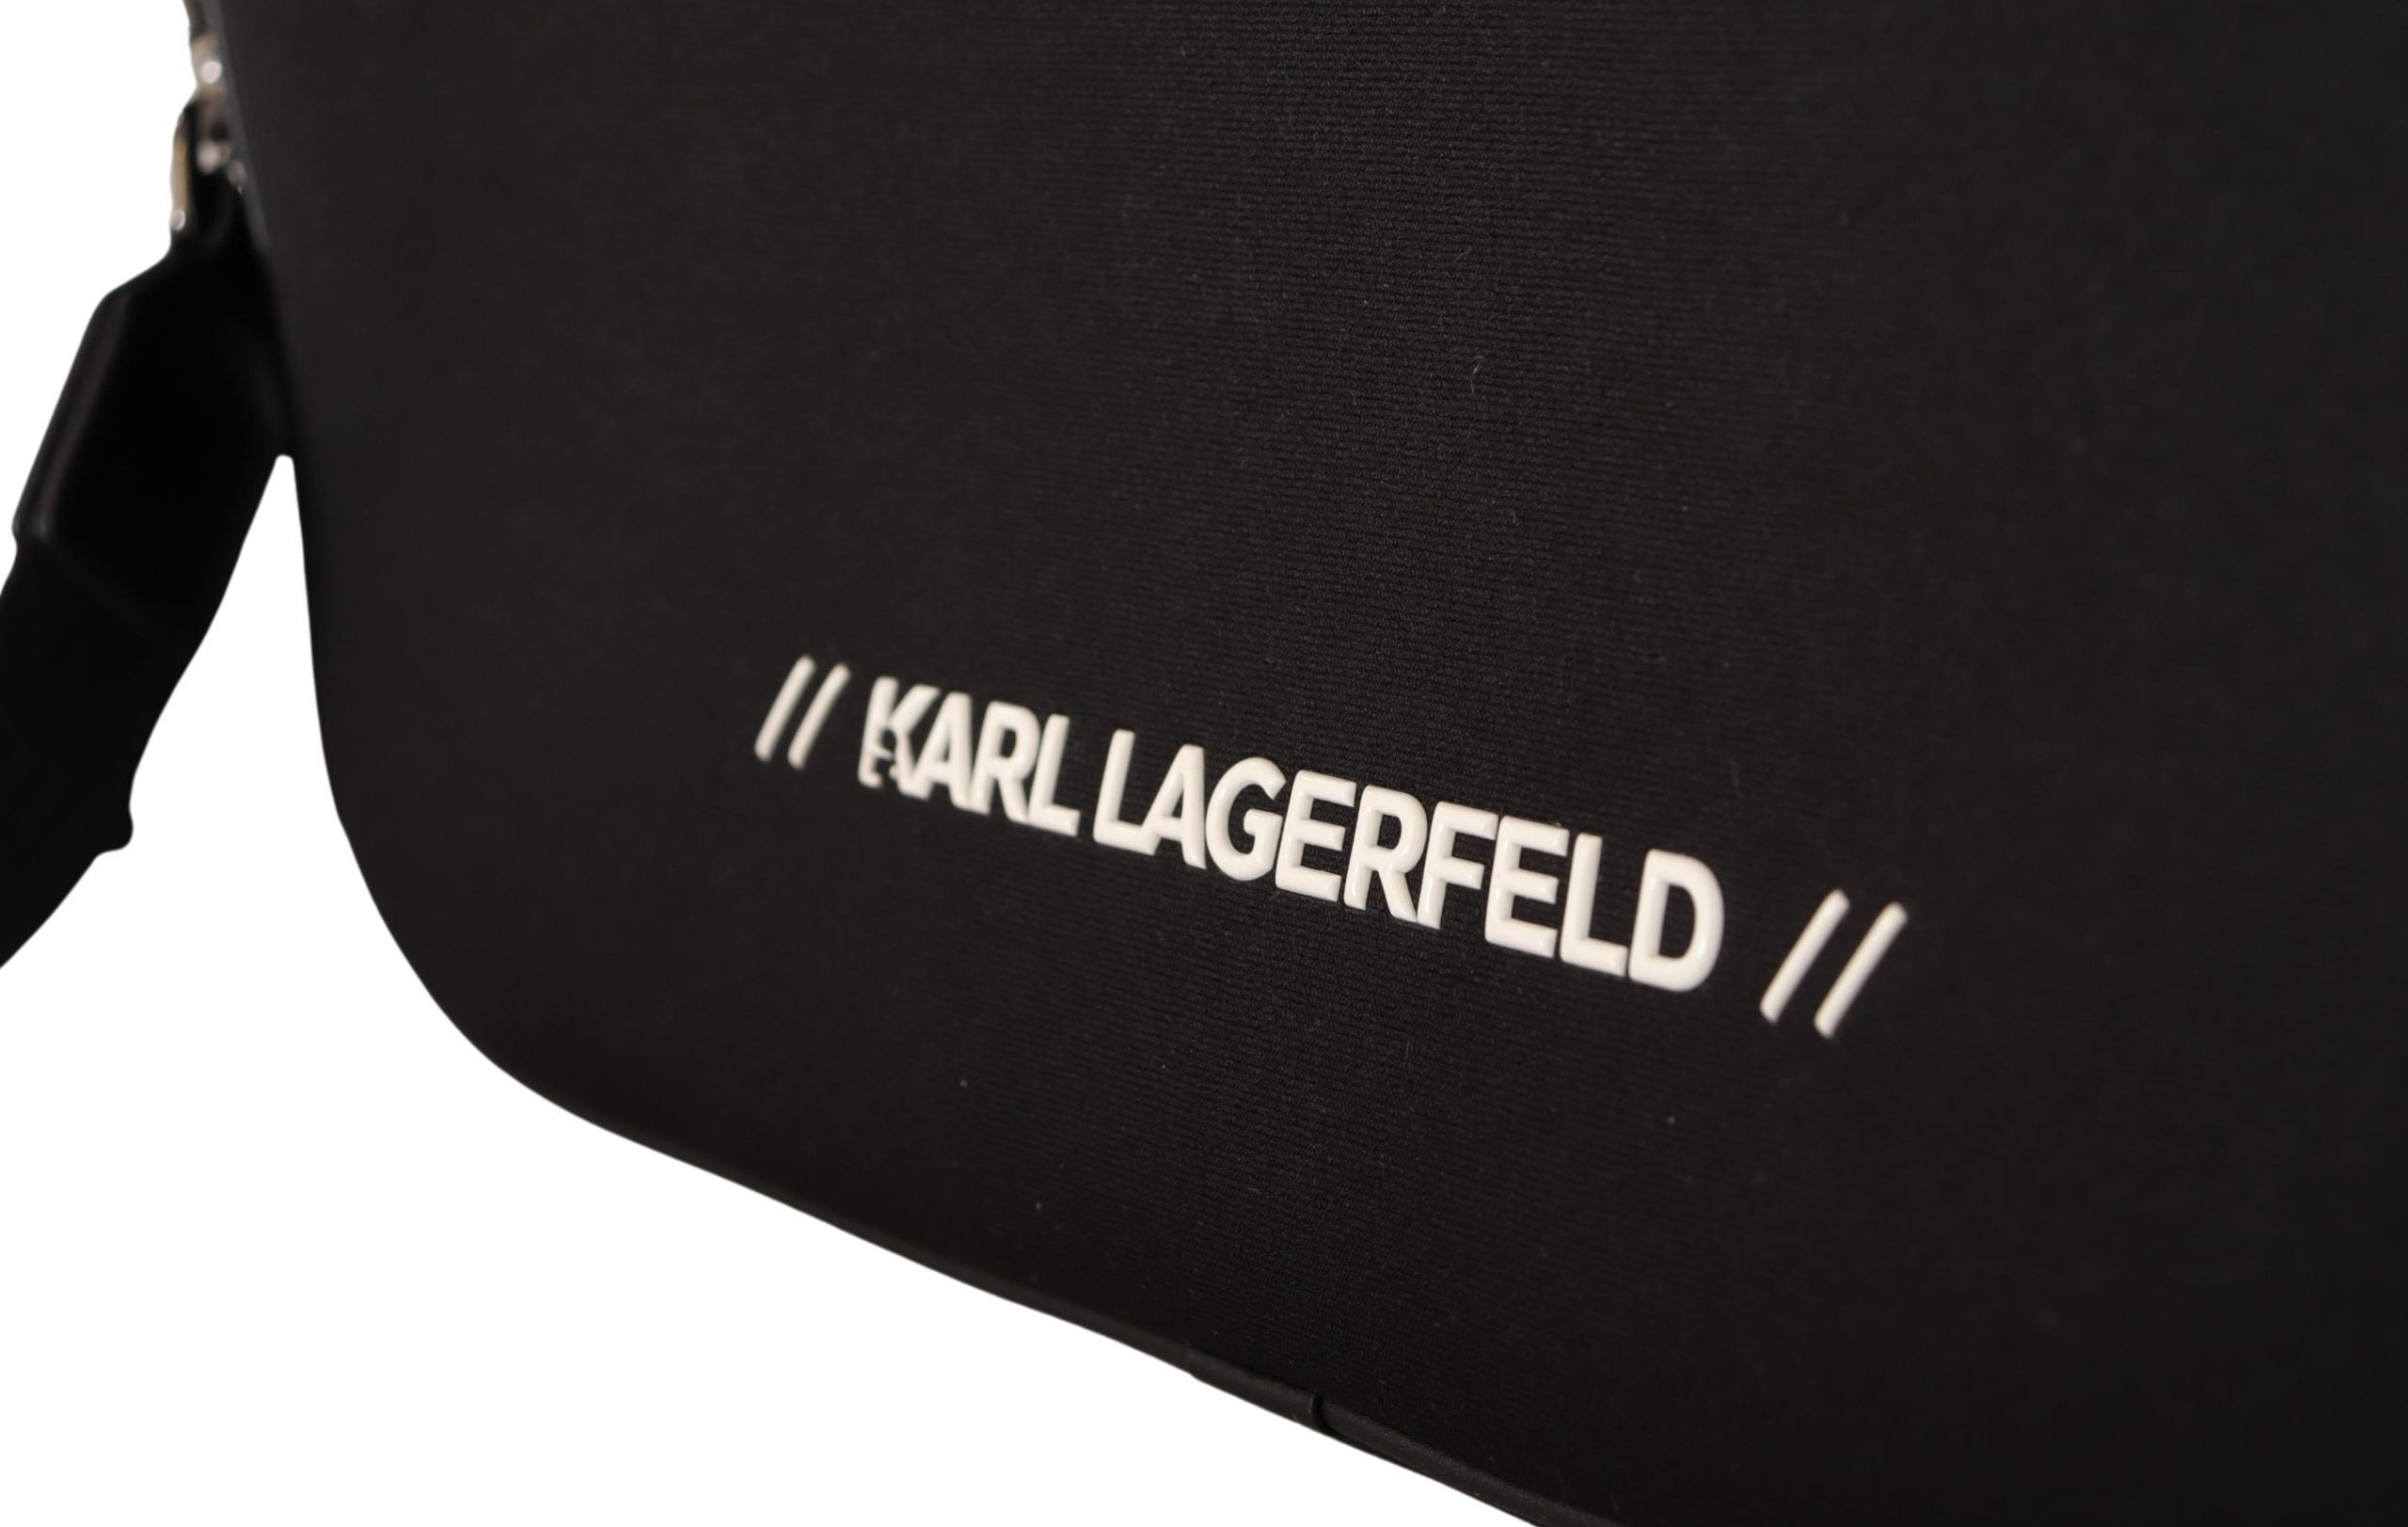 Karl Lagerfeld – Elegante Laptop-Umhängetasche aus Nylon für anspruchsvollen Stil